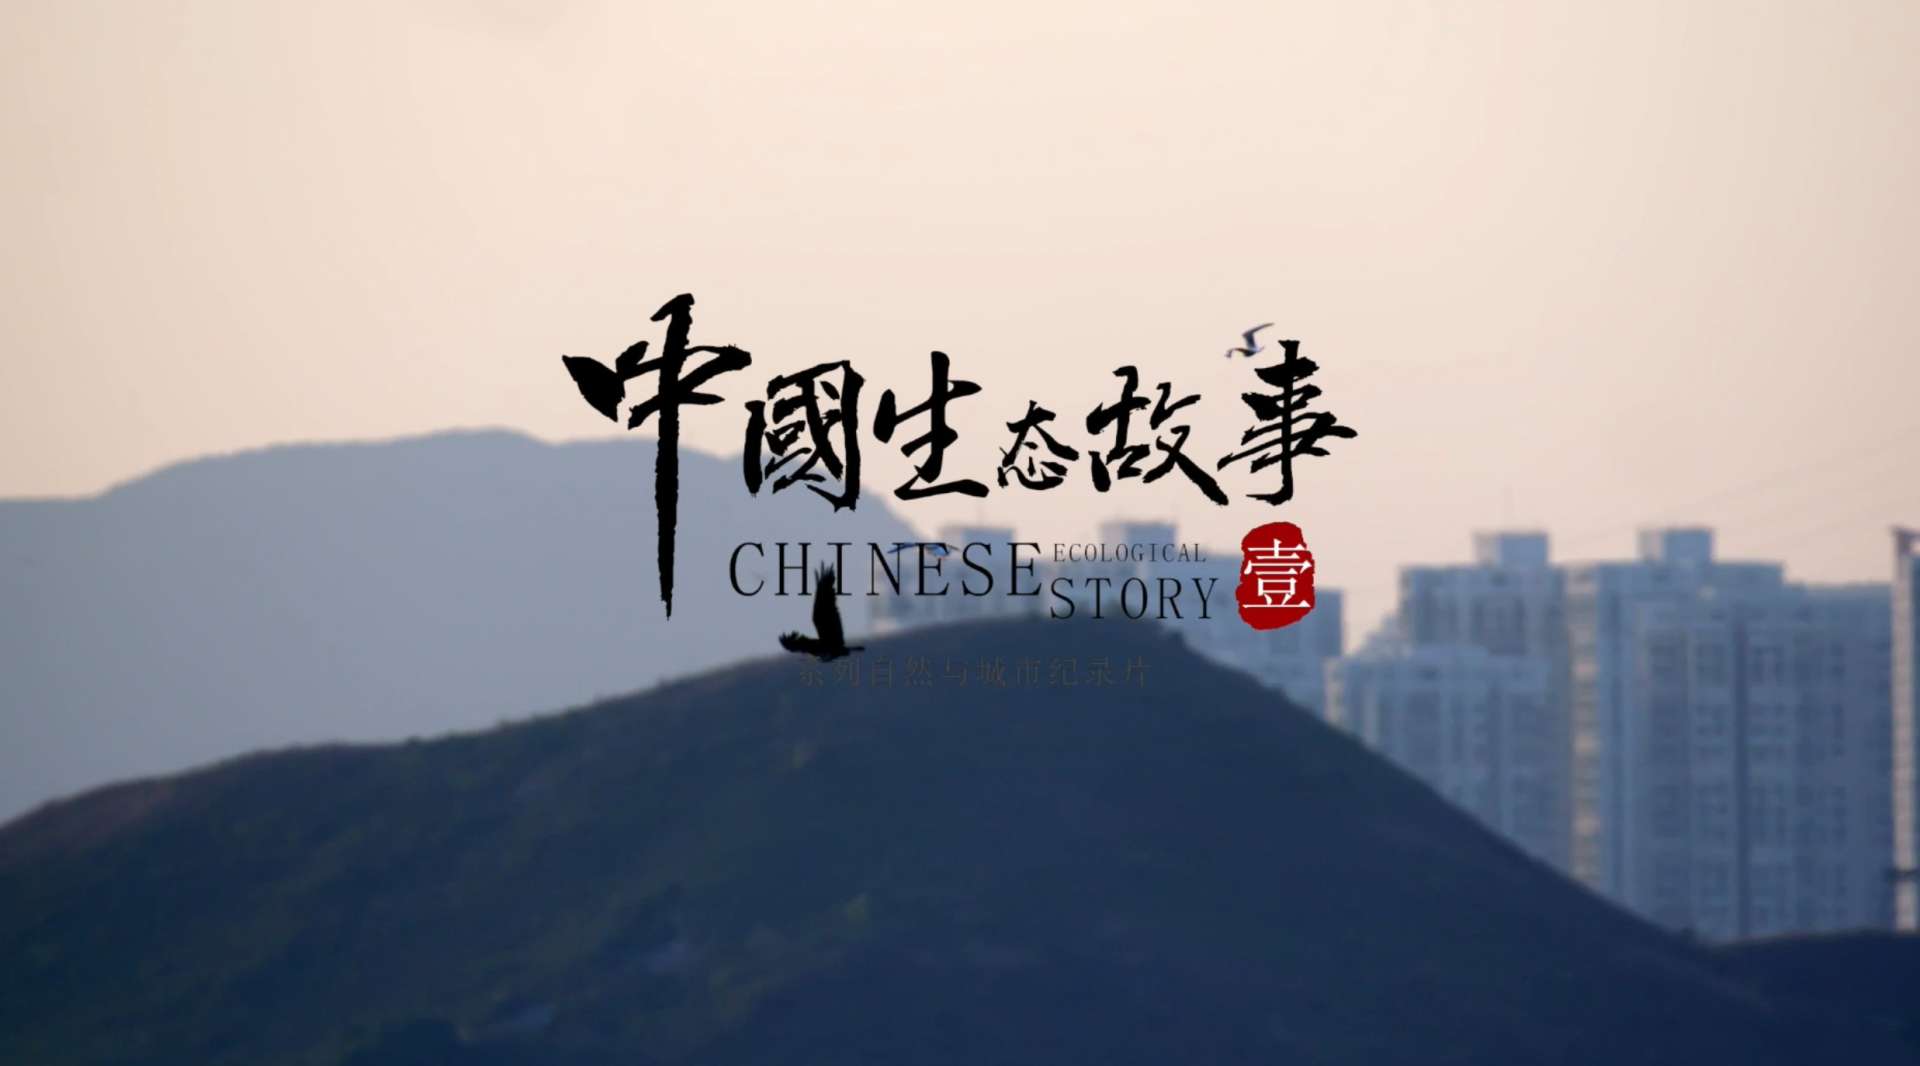 《中国生态故事》系列纪录片。深圳片预告